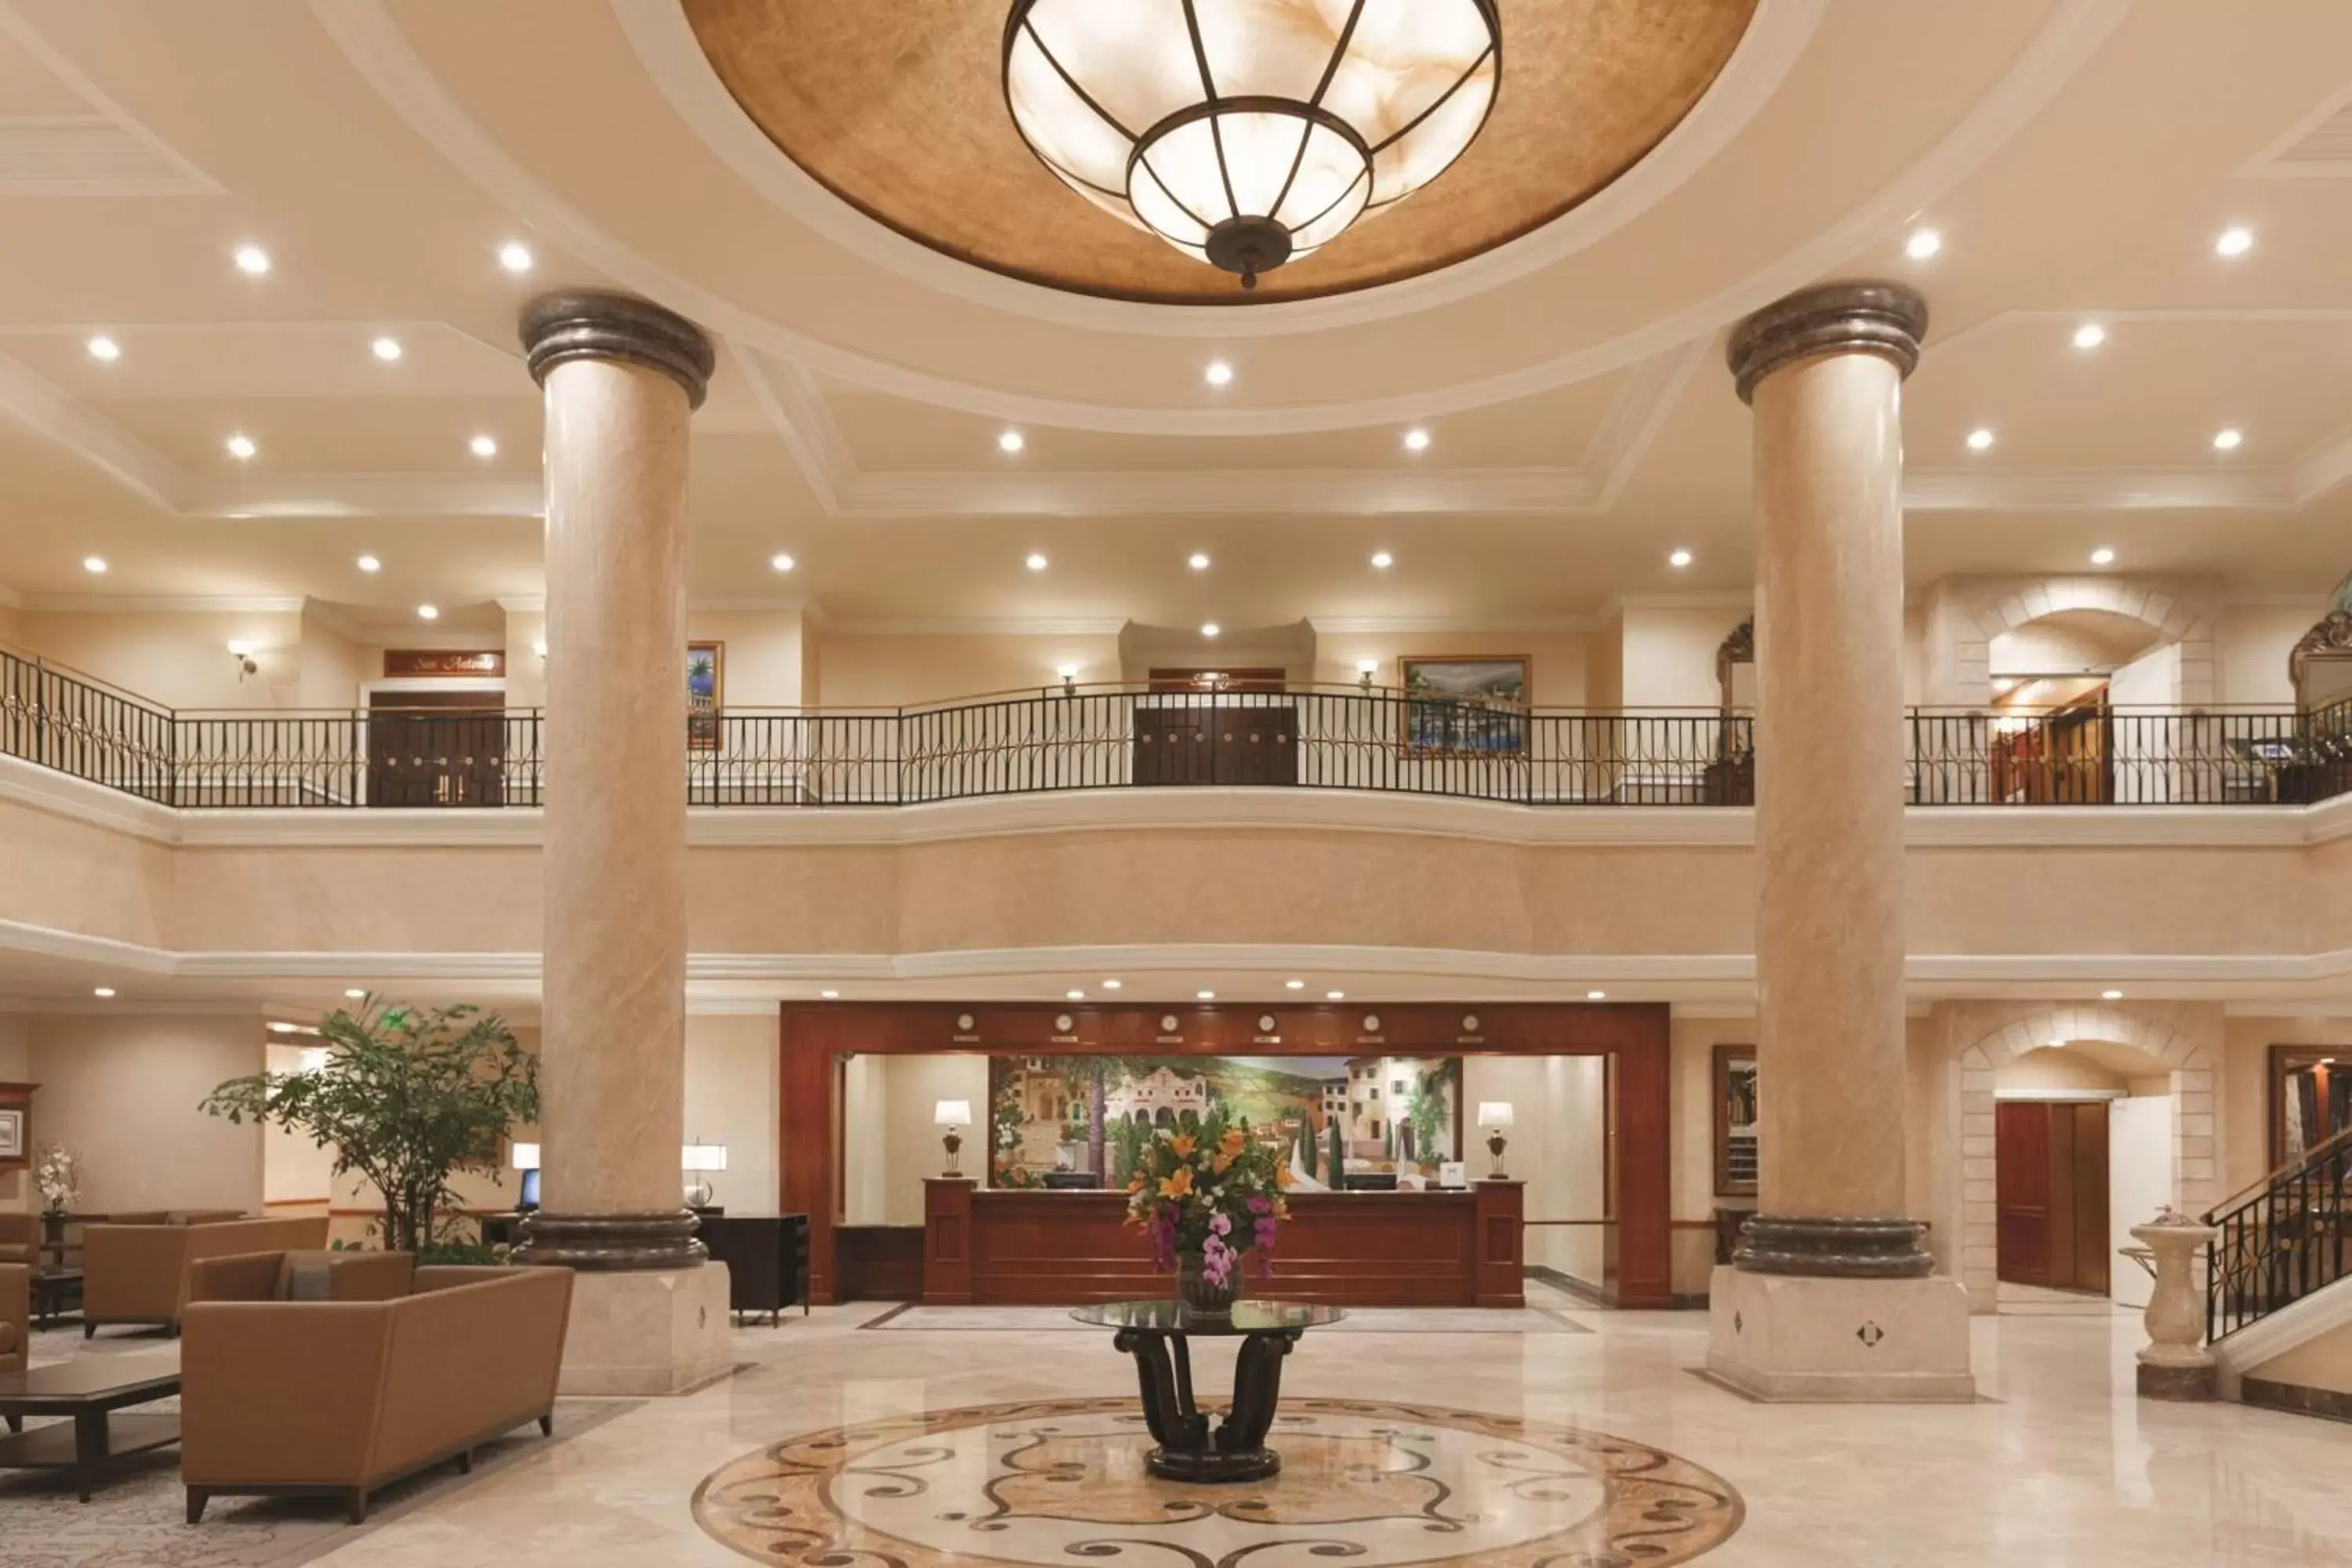 Lobby or reception, Lobby/Reception in Hilton Los Angeles/San Gabriel